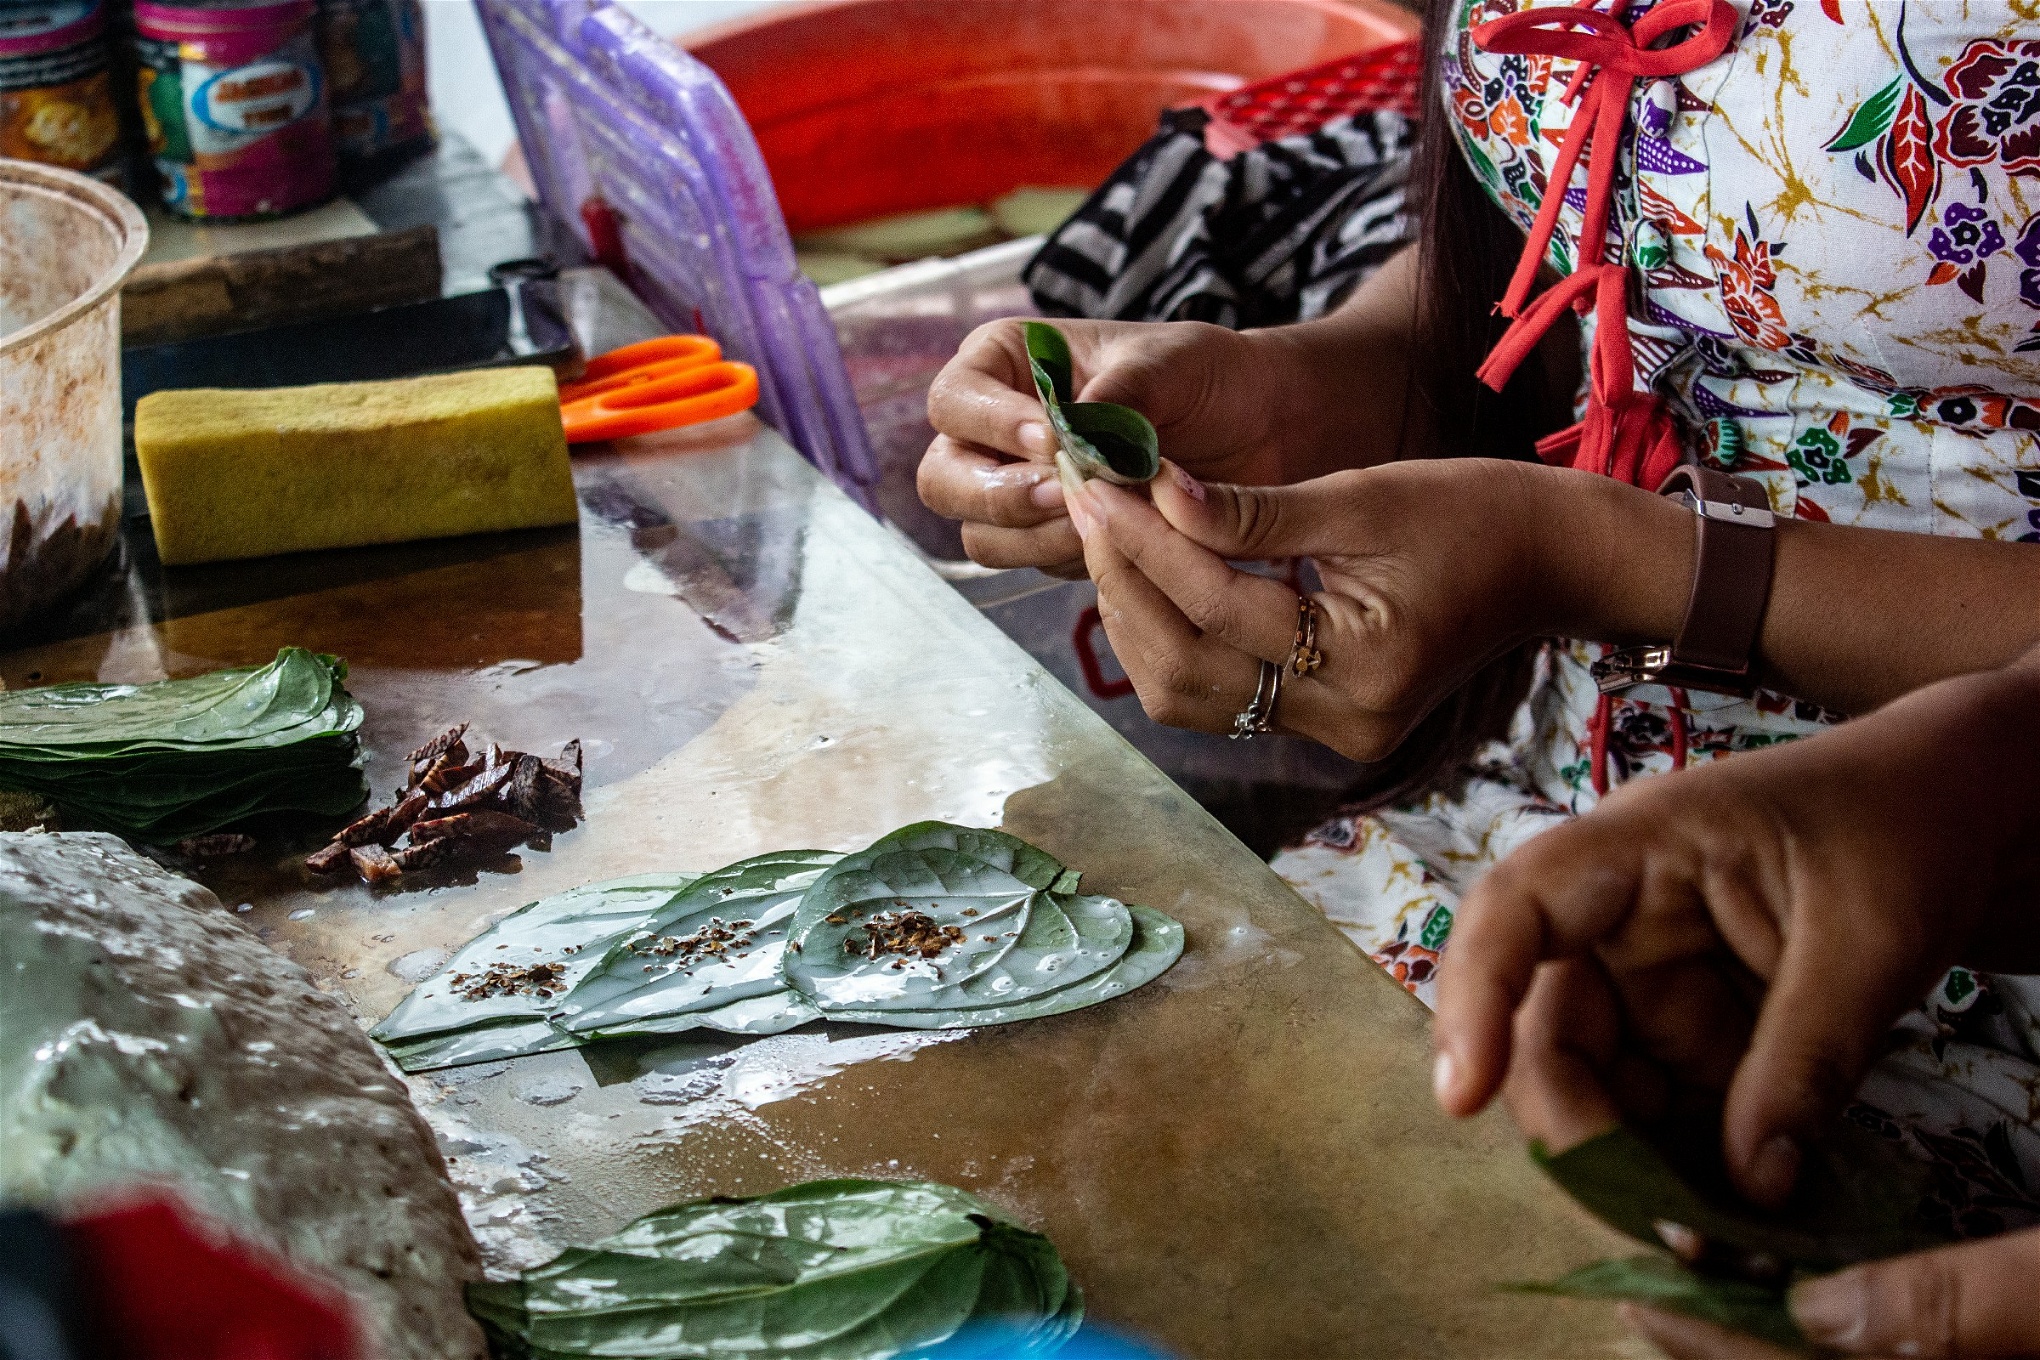 Ma Win Pa Pa jobbar nu med sin mamma i hennes ett stånd där de säljer betelpan – en milt stimulerande nöt, inlindad i ett betelblad ihop med tobak. Foto: Kyaw Lin Htoon